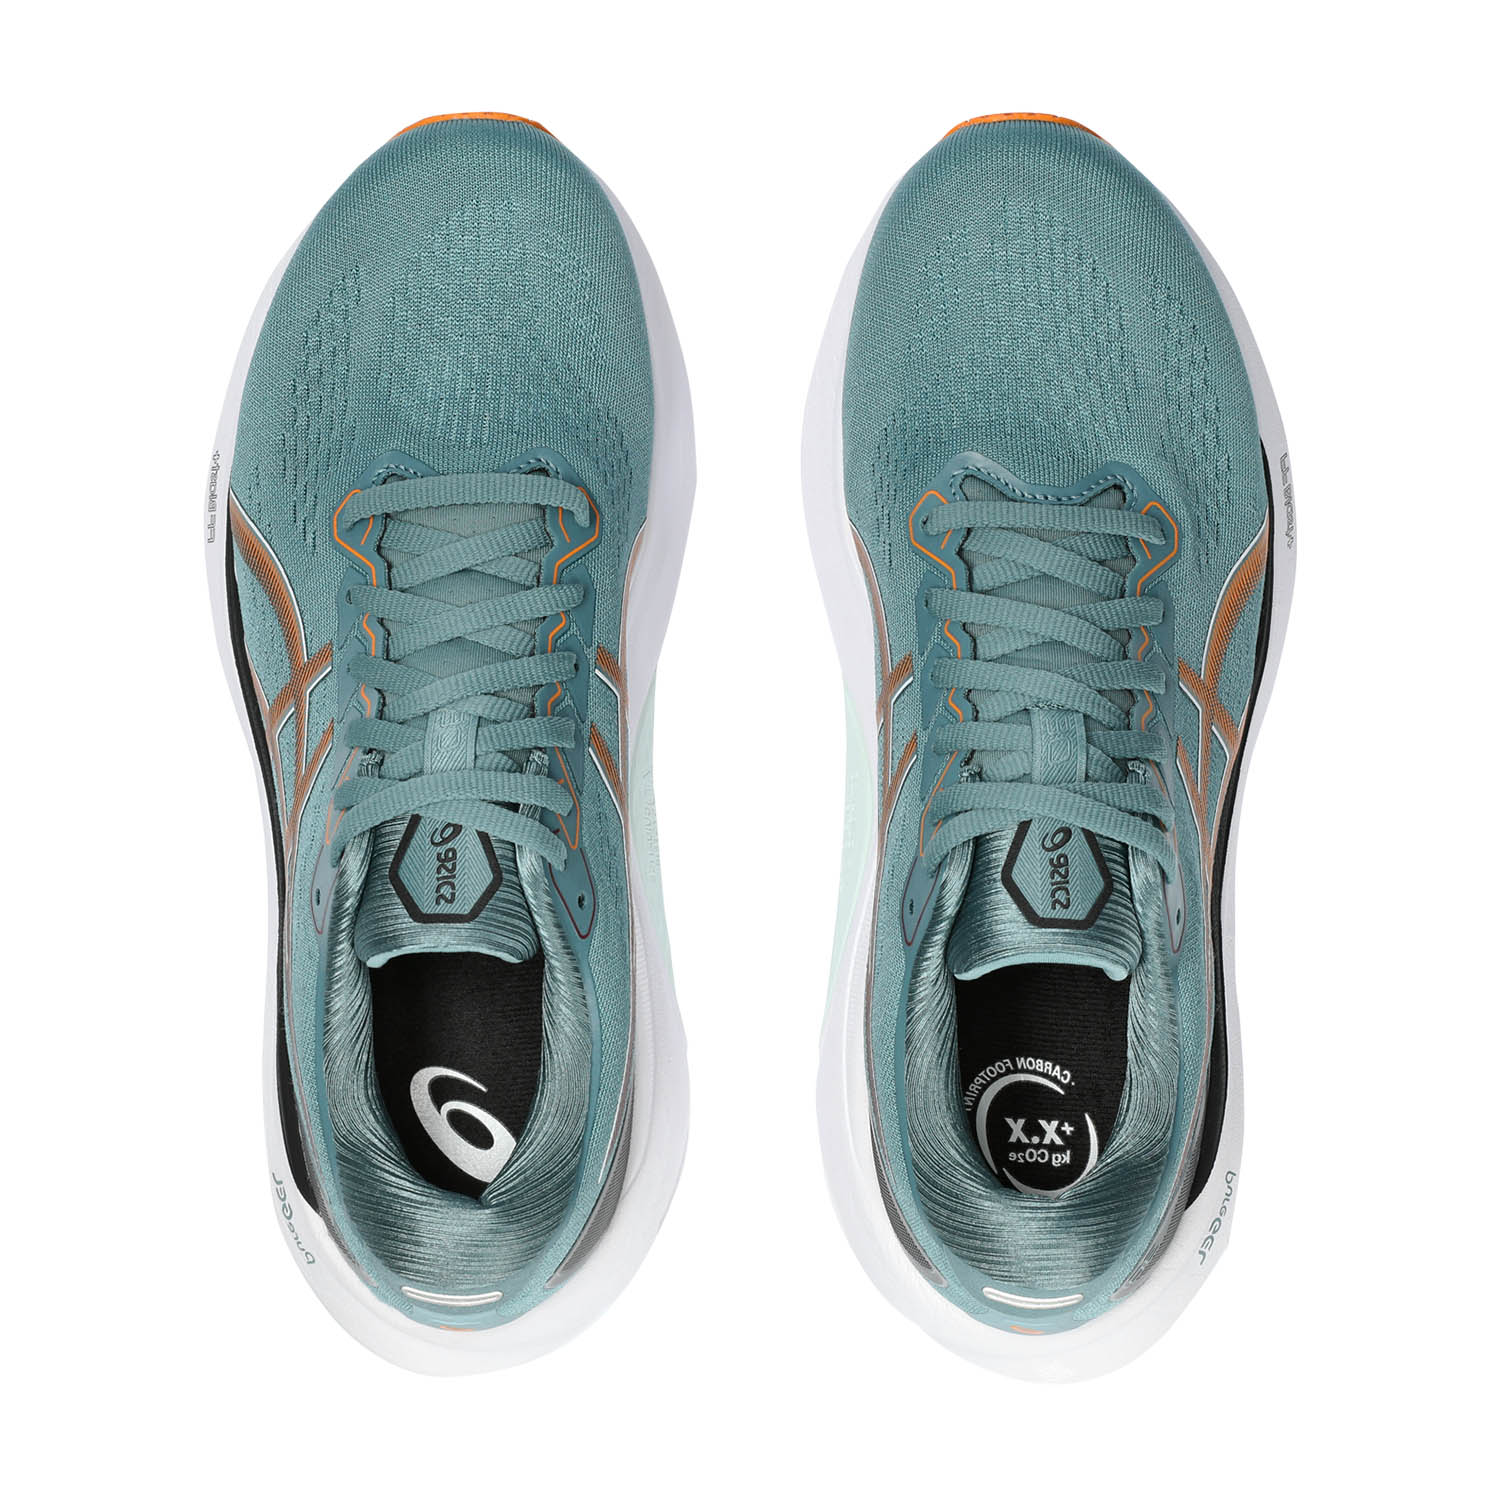 Asics Gel Kayano 30 Men's Running Shoes - Foggy Teal/Orange